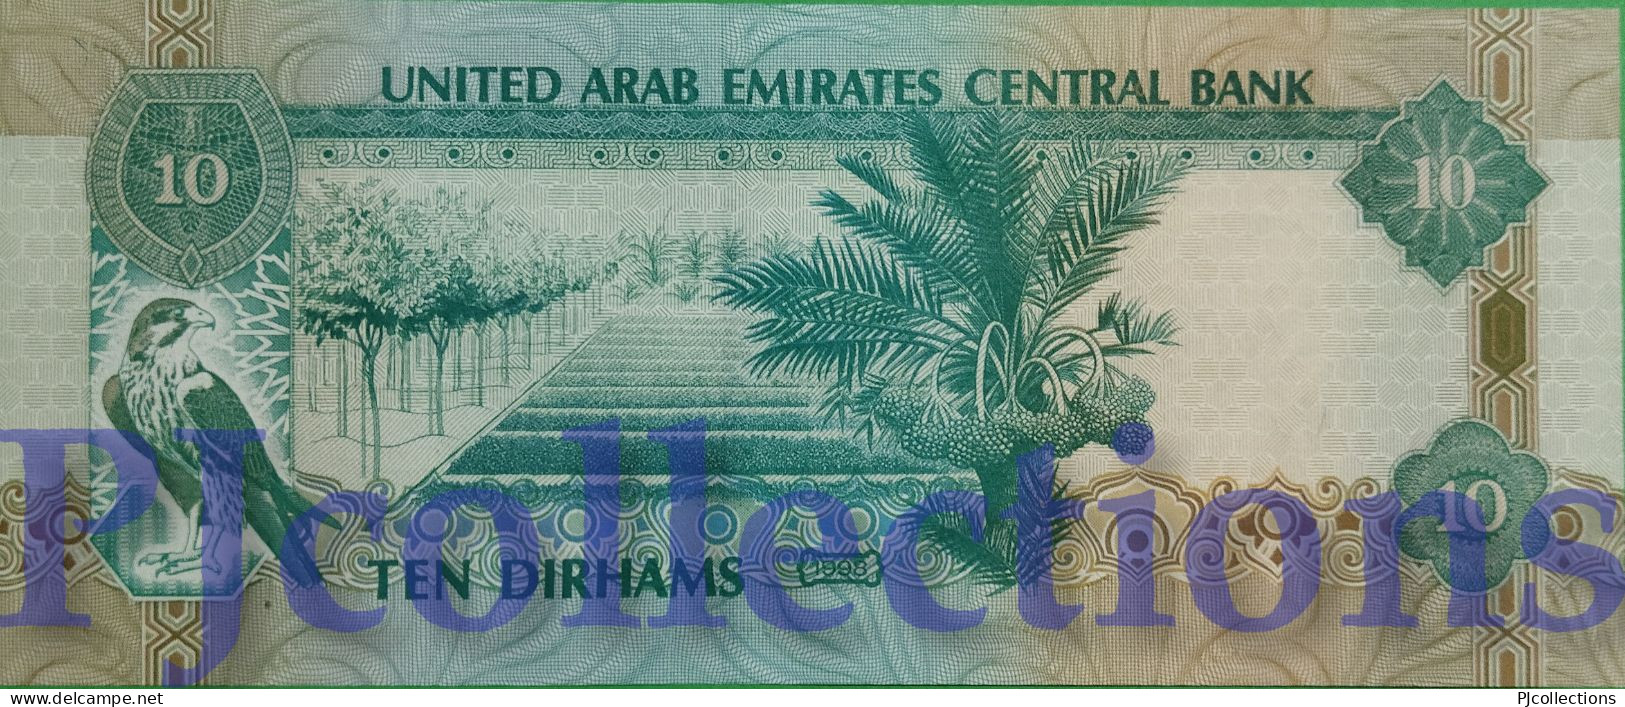 UNITED ARAB EMIRATES 10 DIRHAMS 1998 PICK 20a AU/UNC - United Arab Emirates